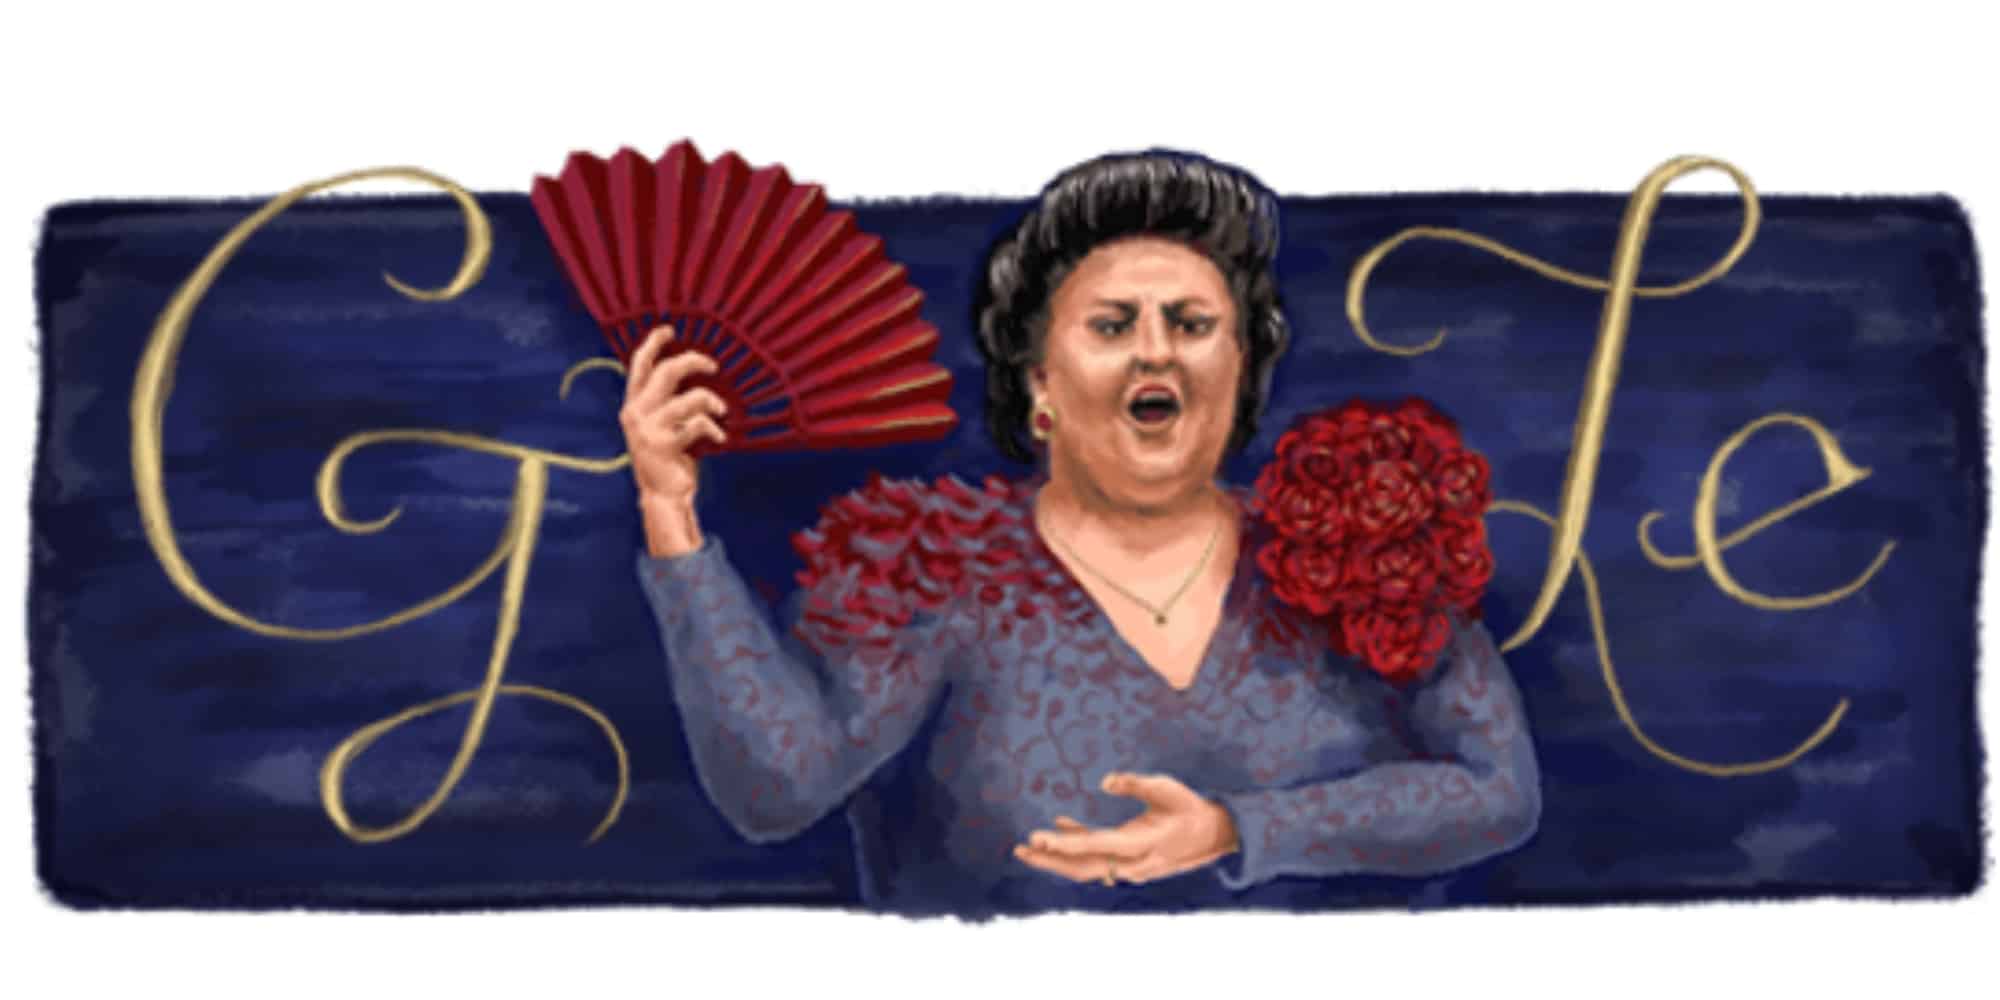 Η Google τιμά με doodle την αξέχαστη ντίβα της όπερας, Μονσεράτ Καμπαγιέ